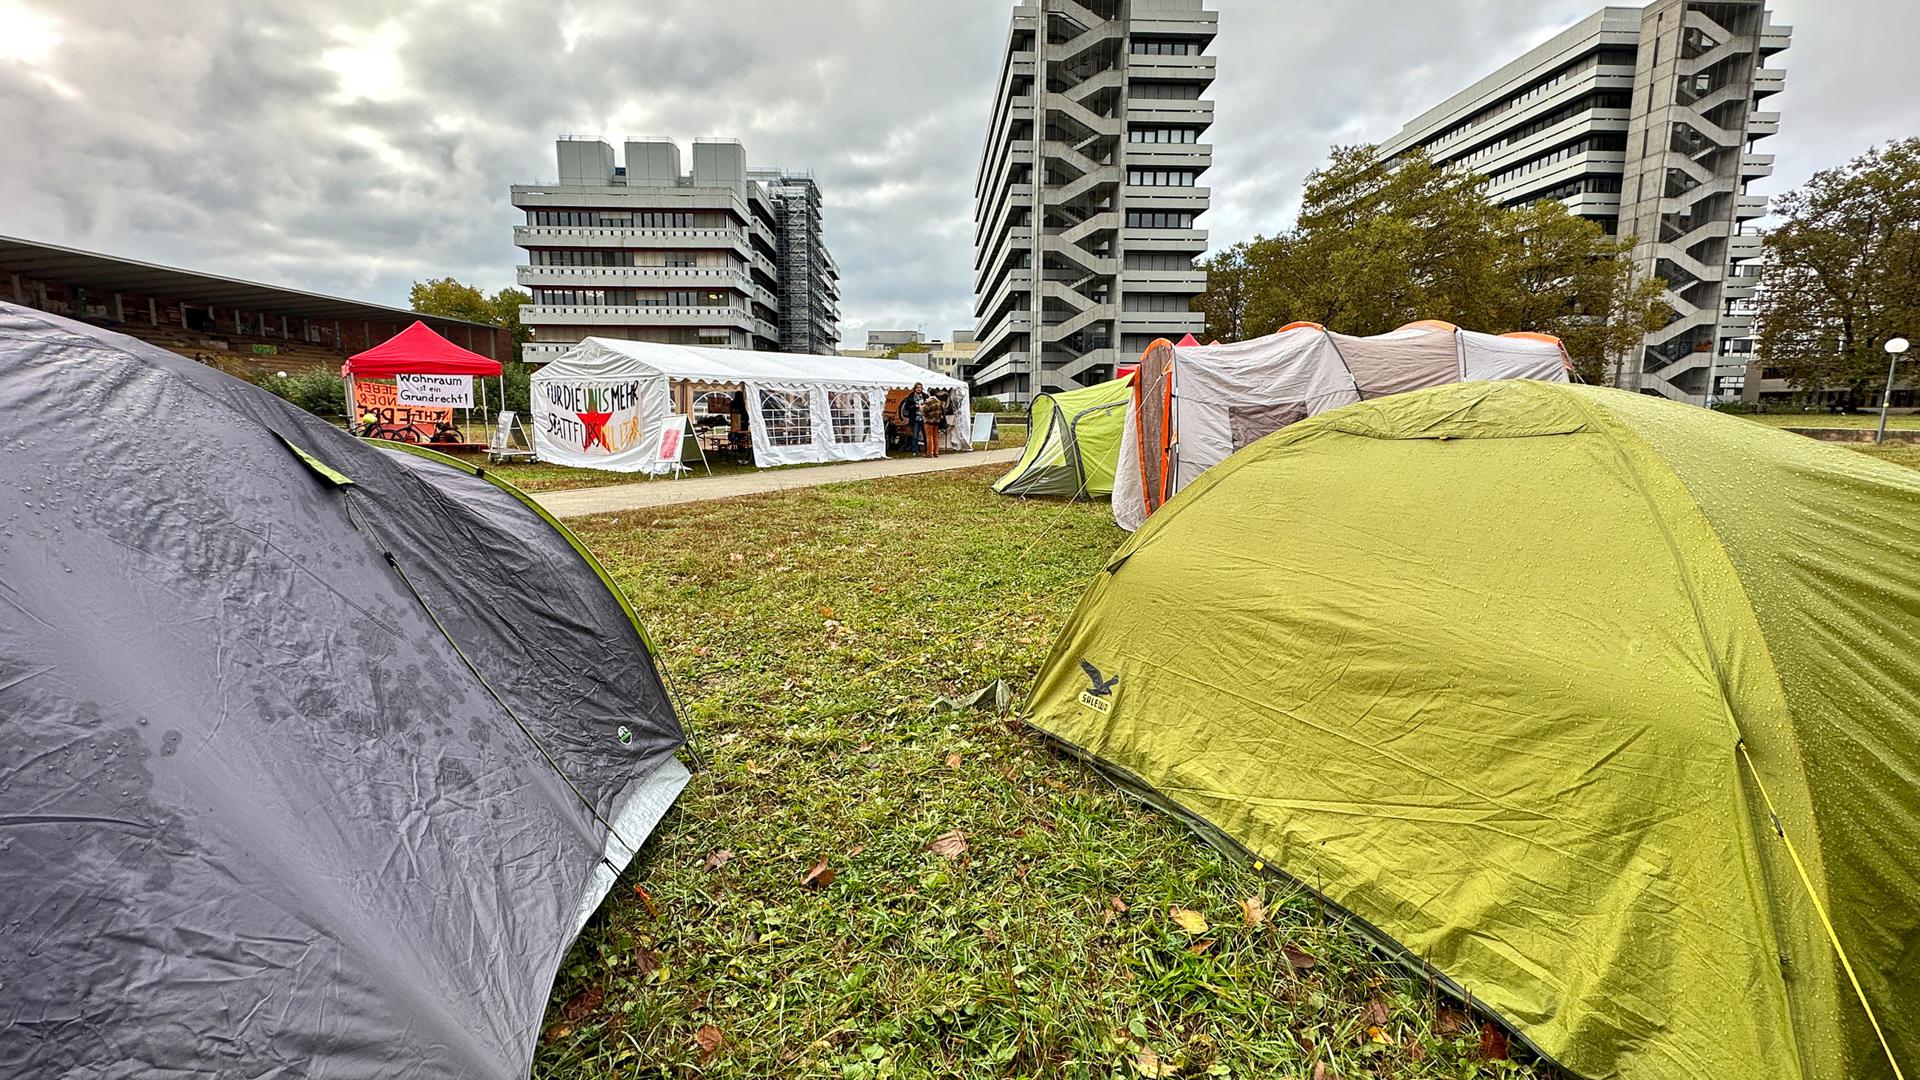 Das Protestcamp befindet sich auf einer Wiese auf dem Campus Süd des Karlsruher Instituts für Technologie (KIT), im Hintergrund sind Universitätsgebäude zu erkennen.